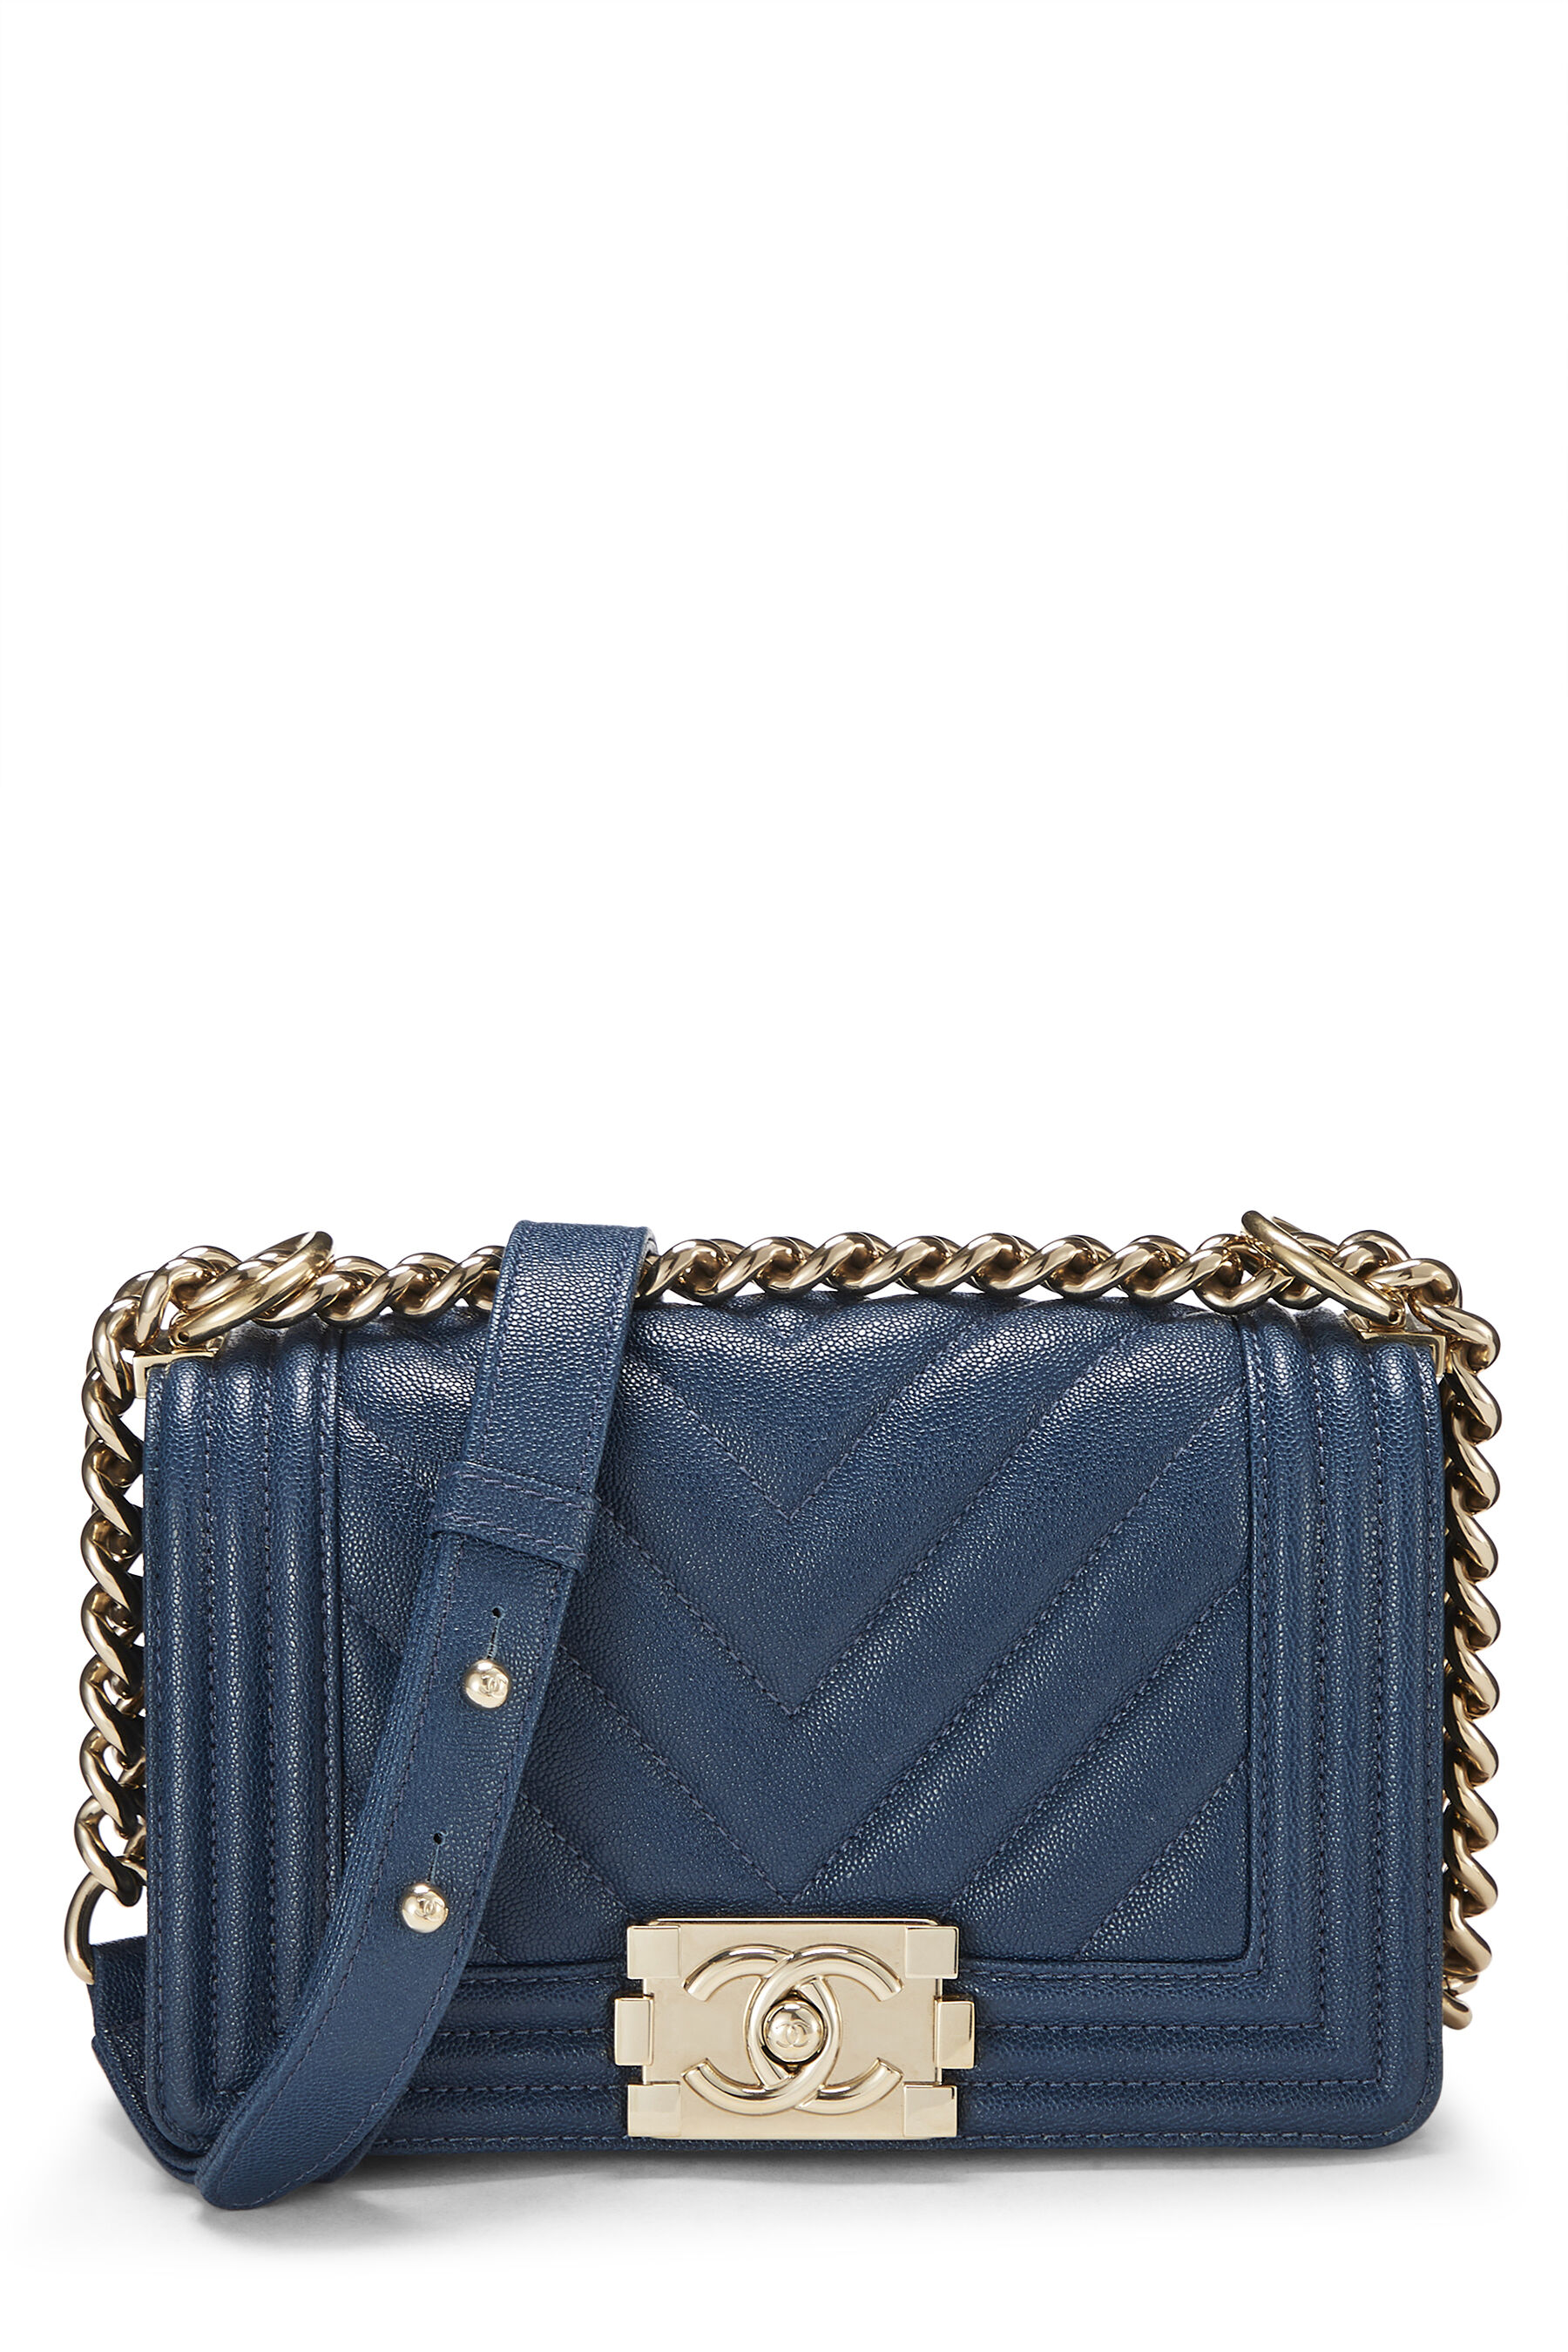 Chanel - Bags - Le Boy – Boutique Patina